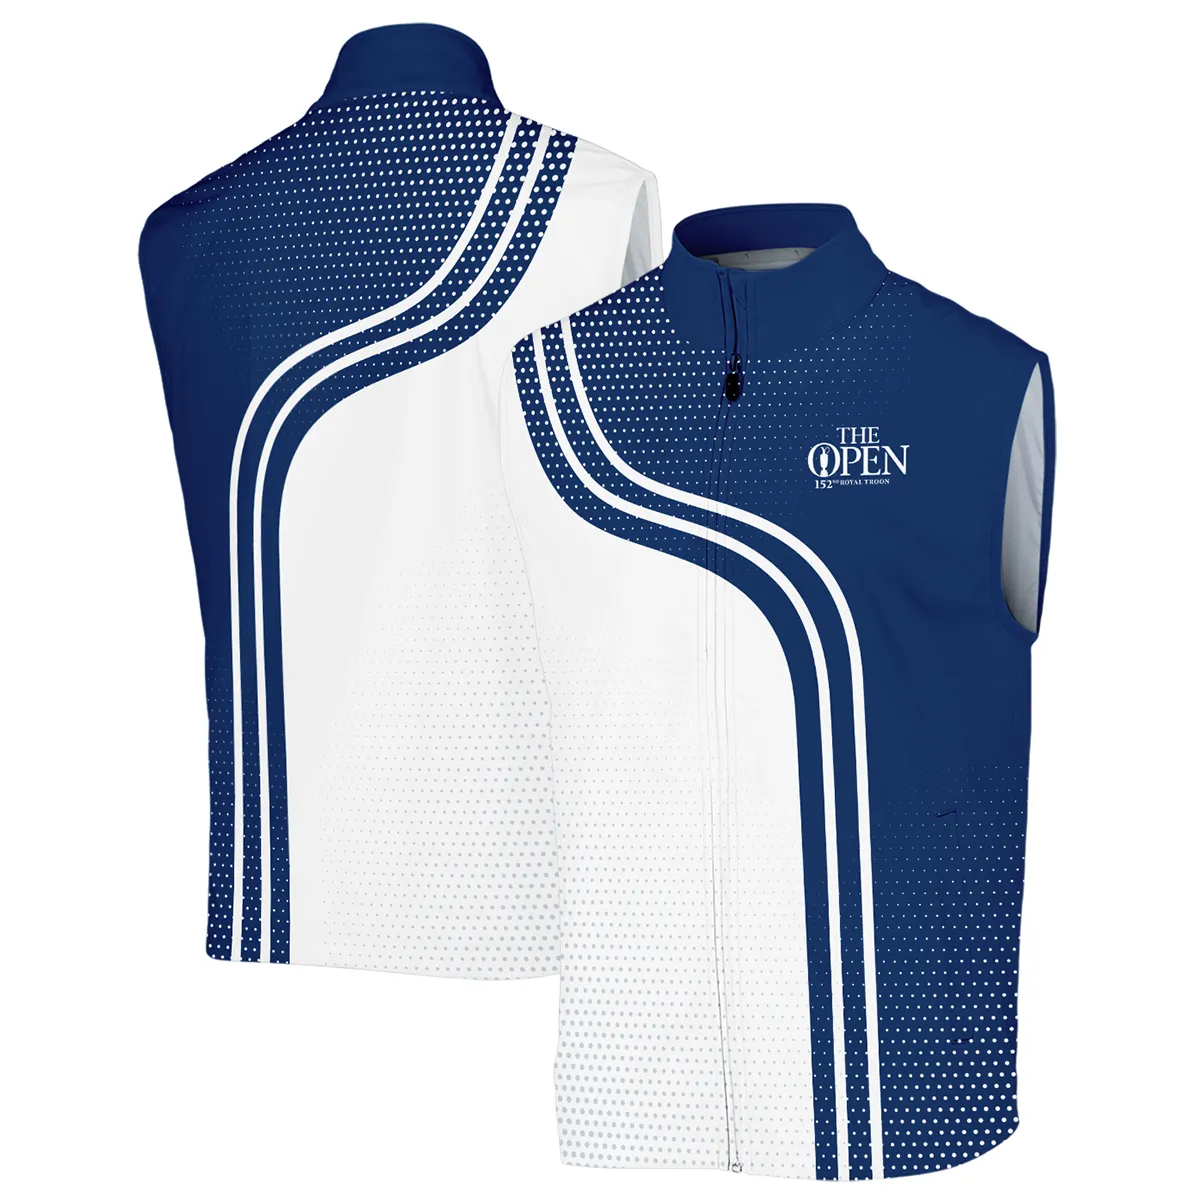 Golf Blue Mix White Sport 152nd Open Championship Pinehurst Rolex Vneck Polo Shirt All Over Prints  QTTOP1806A1ROXZVPL